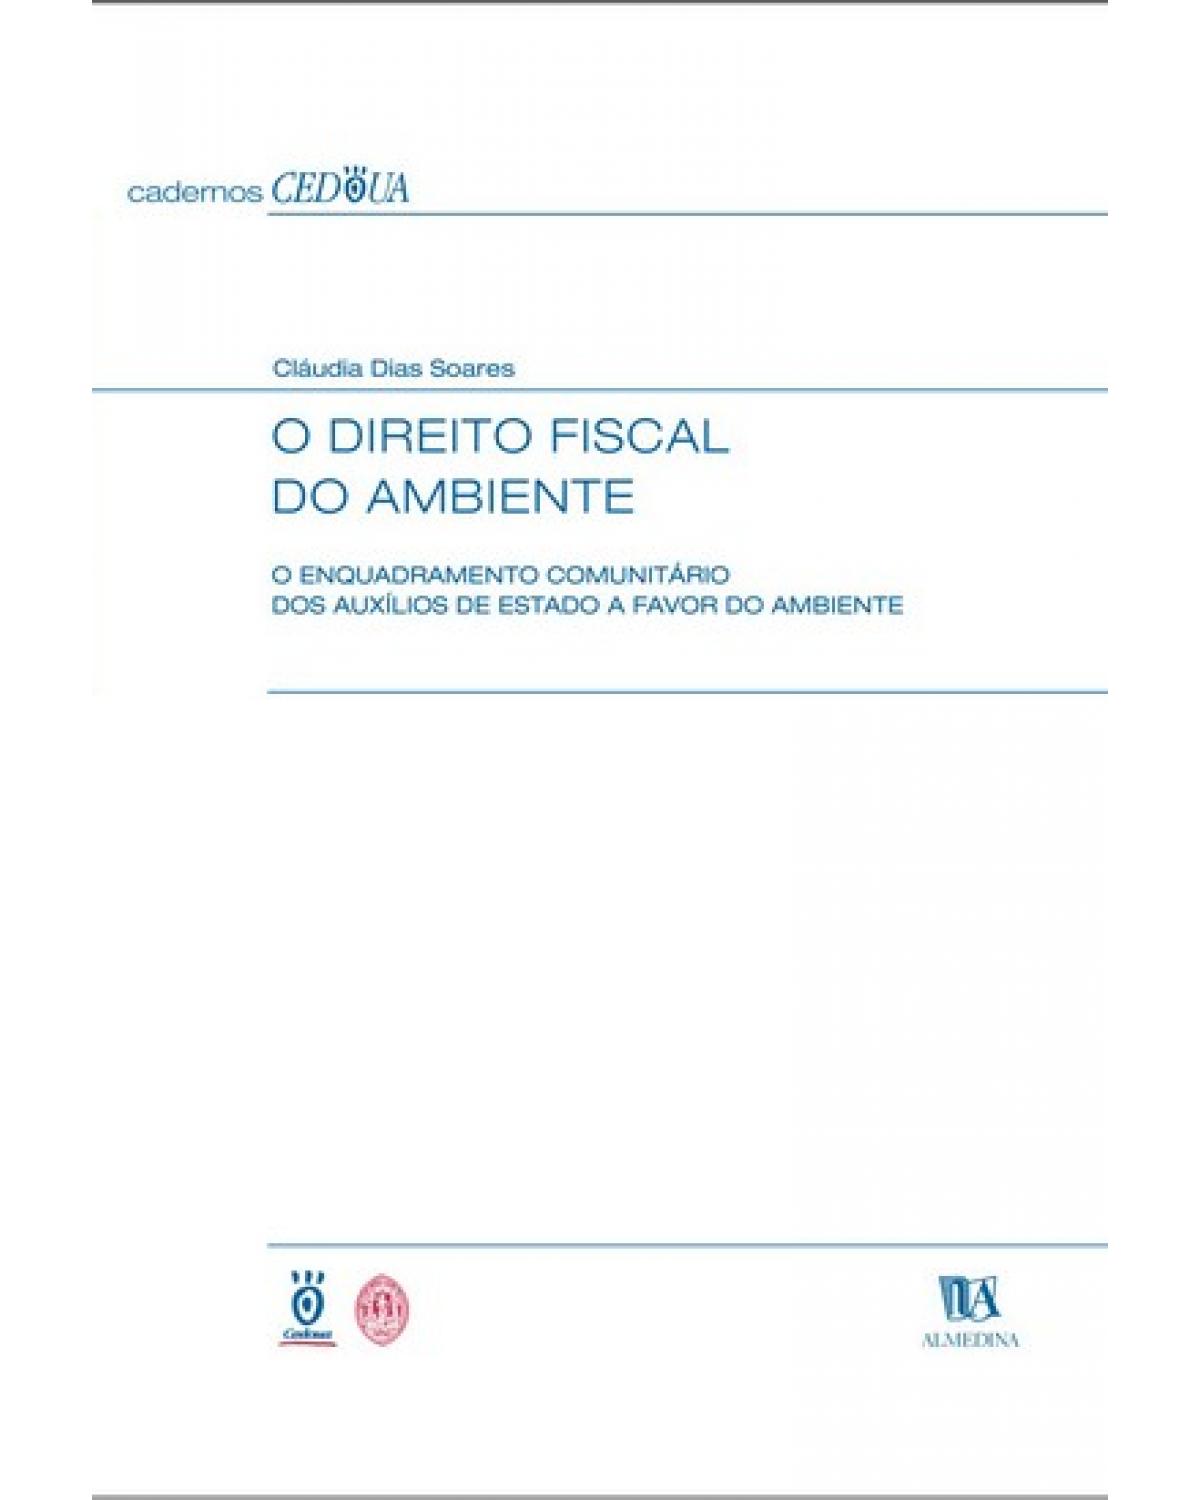 O direito fiscal do ambiente  - o enquadramento comunitário dos auxílios de estado a favor do ambiente - 1ª Edição | 2003